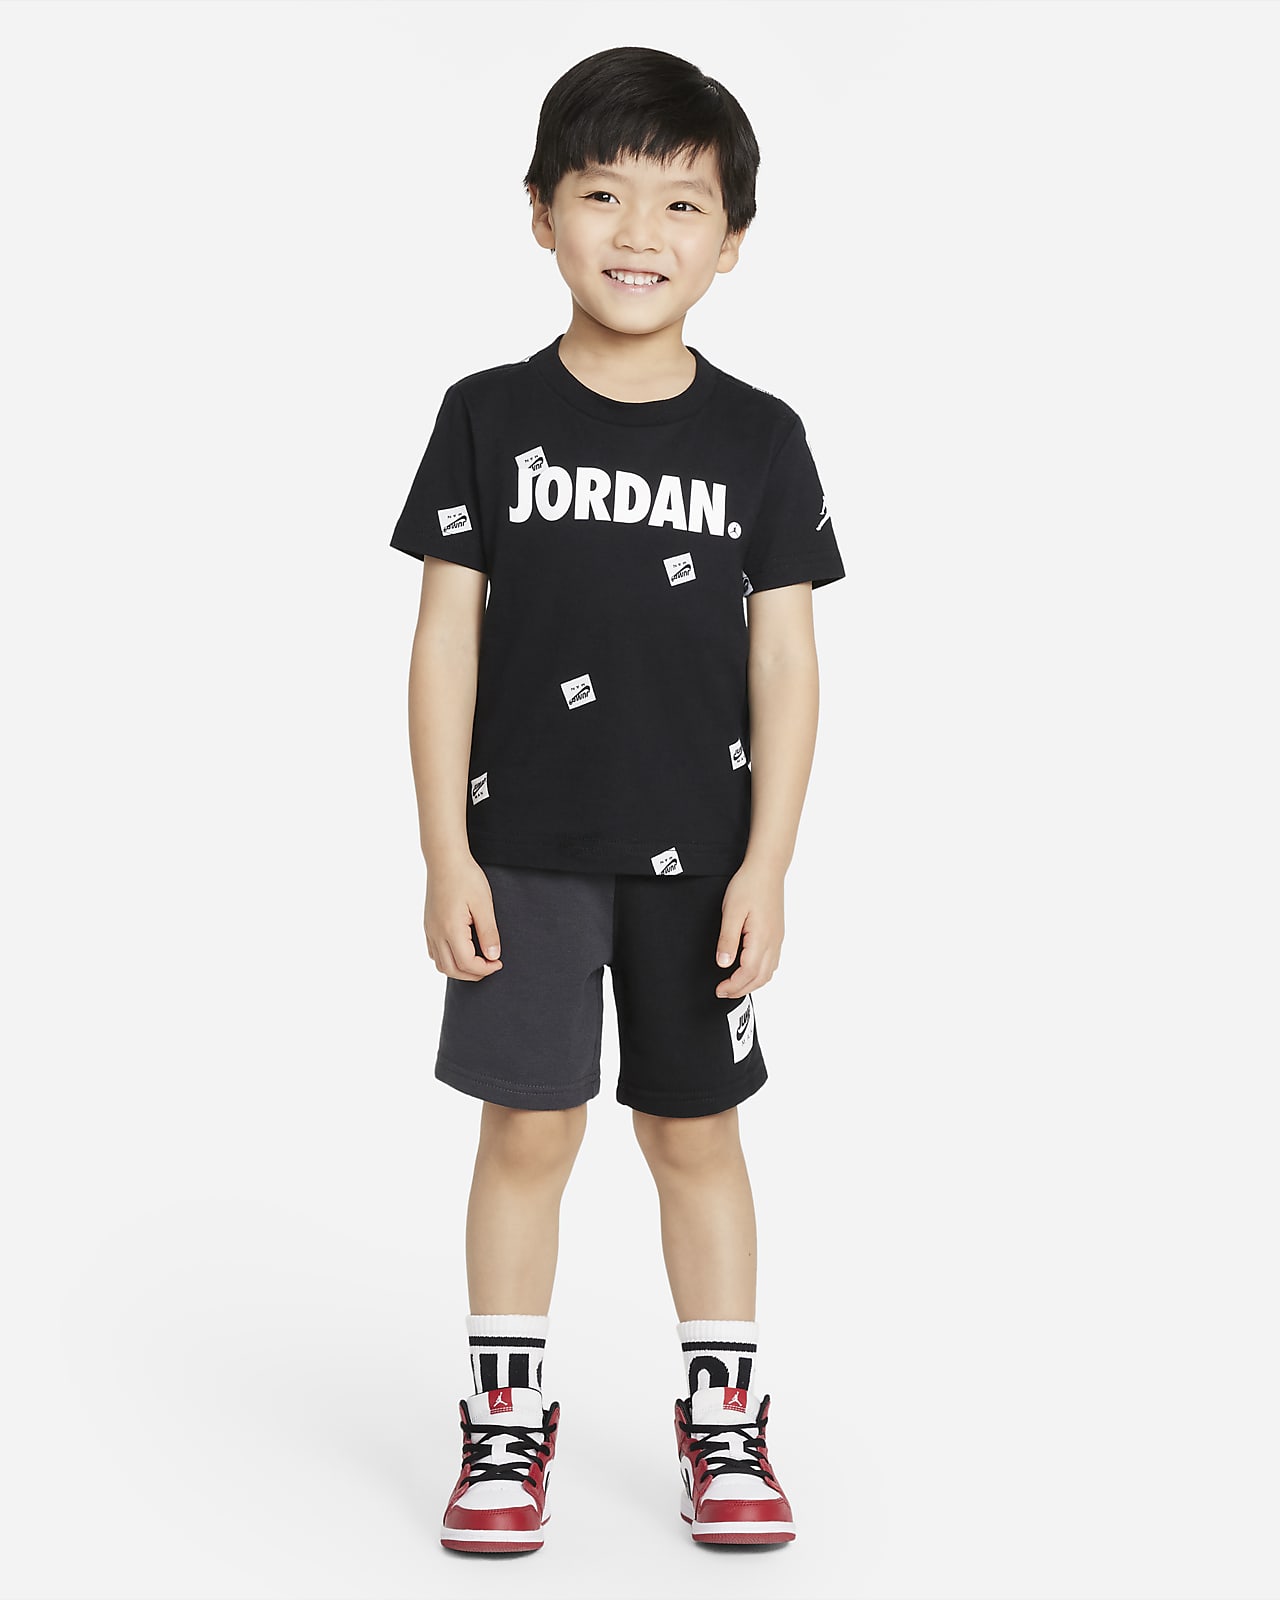 Jordan Jumpman Toddler T-Shirt and Shorts Set